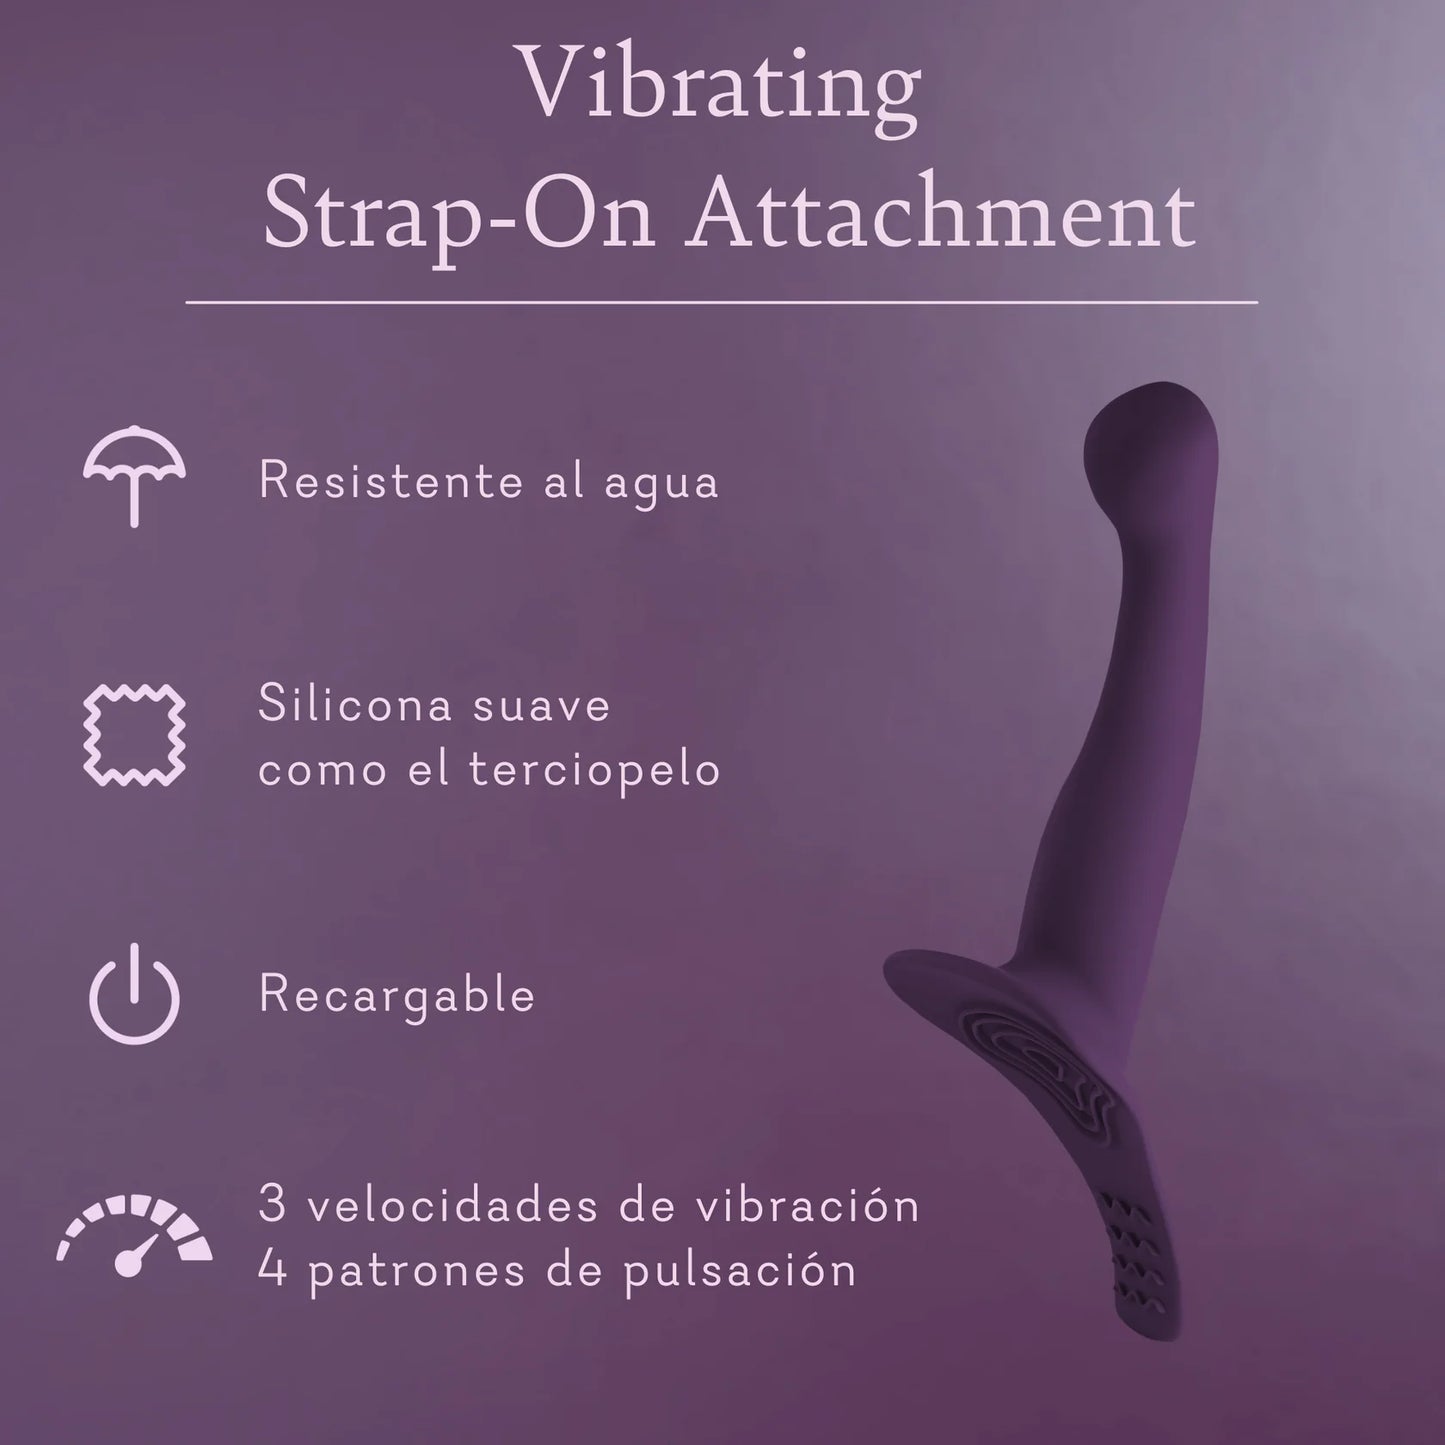 Vibrating Streap-on Attachment (Accesorio vibrador para arnés)